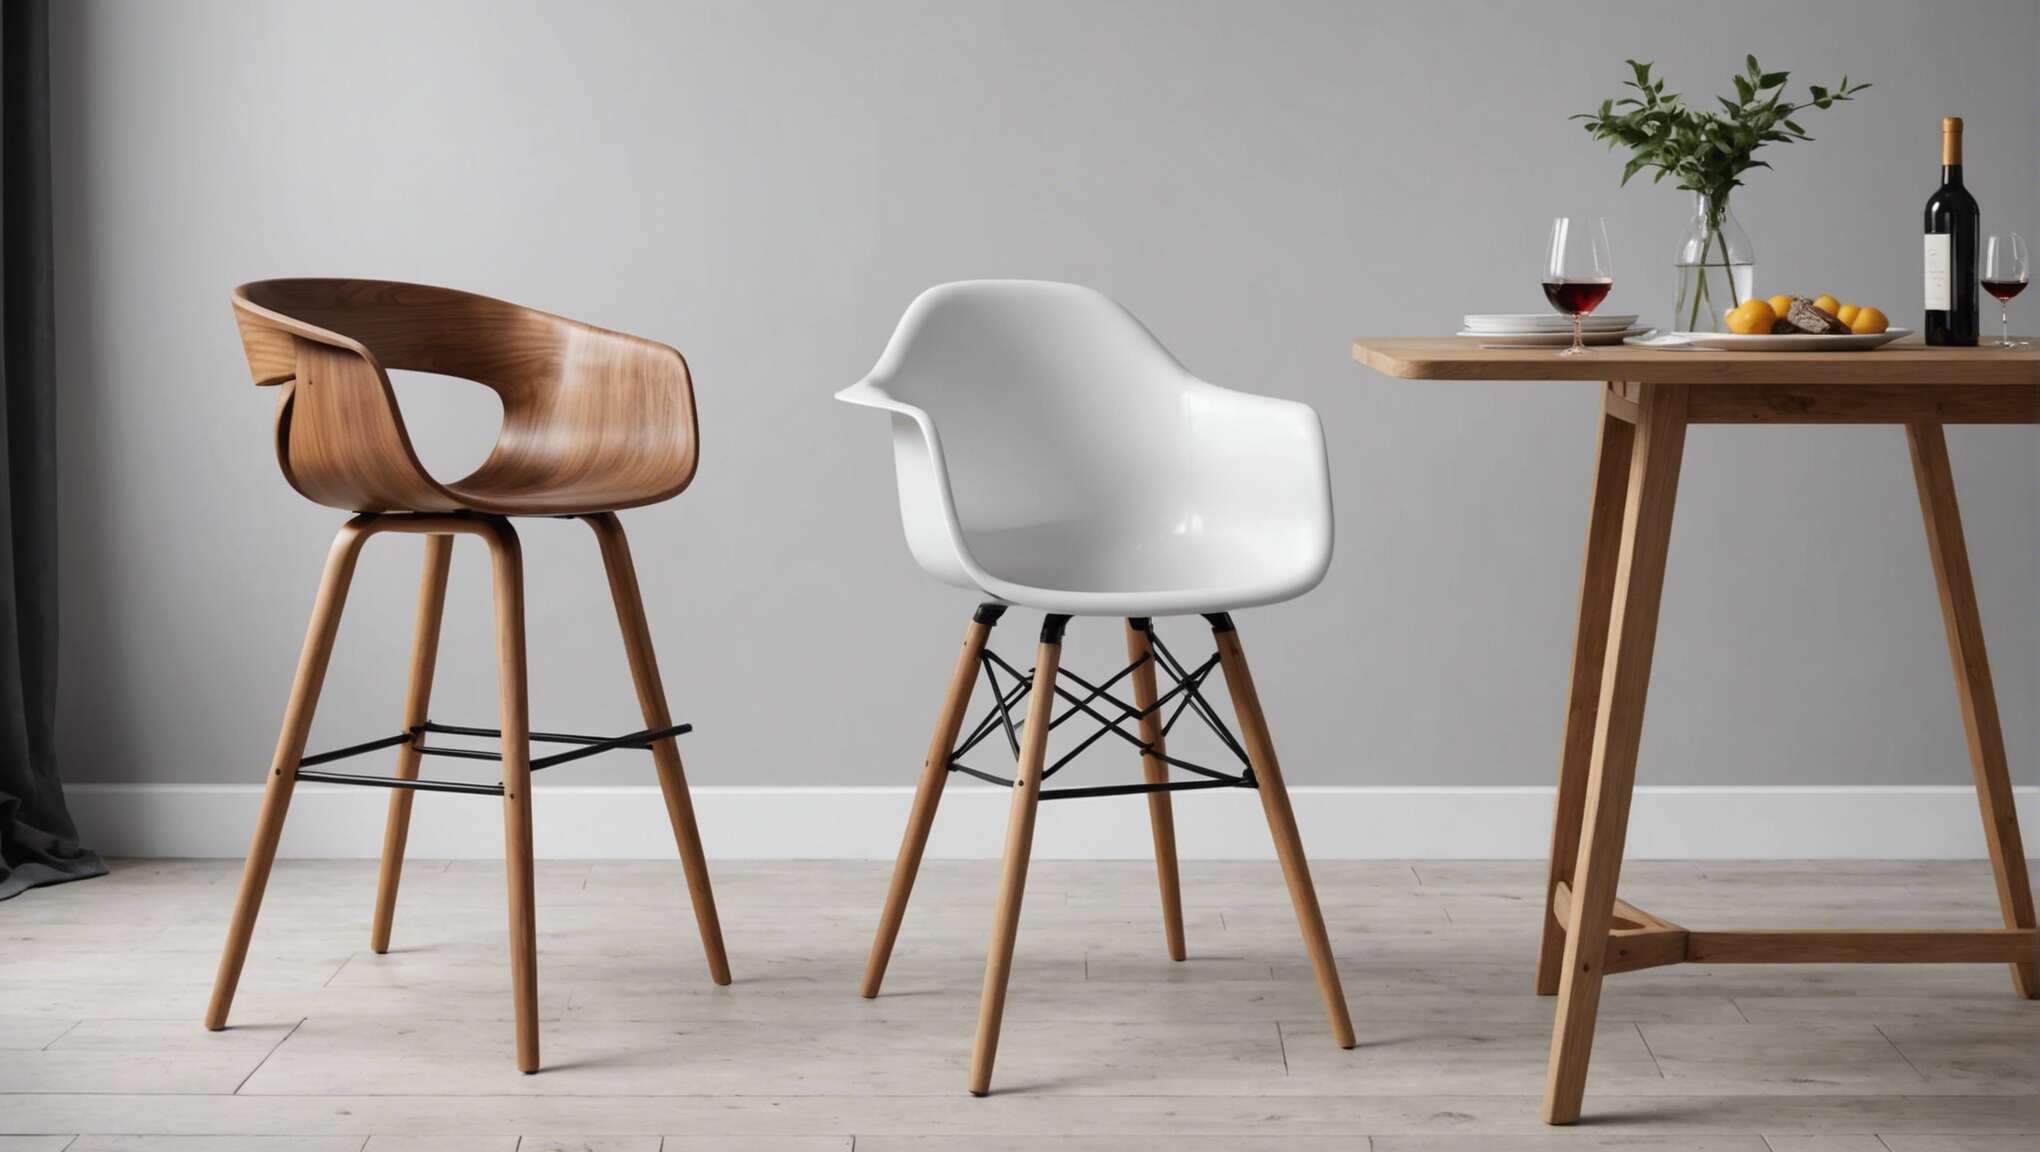 Les différents styles de chaises hautes modernes : du scandinave à l'industriel